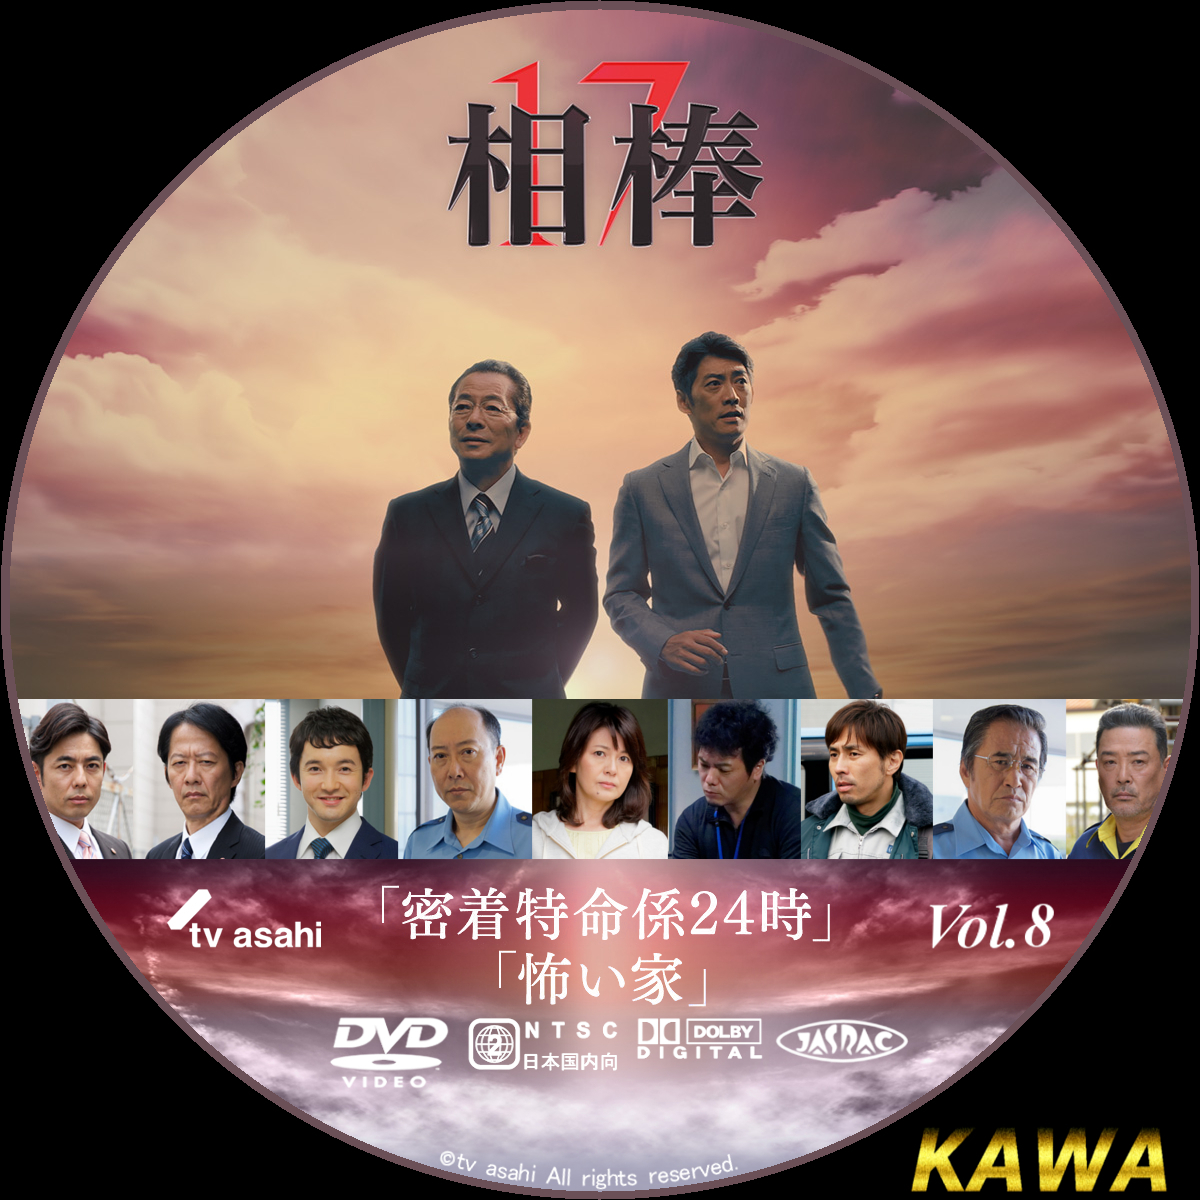 相棒 シーズン17【DVD】全12巻セット | www.ddechuquisaca.gob.bo